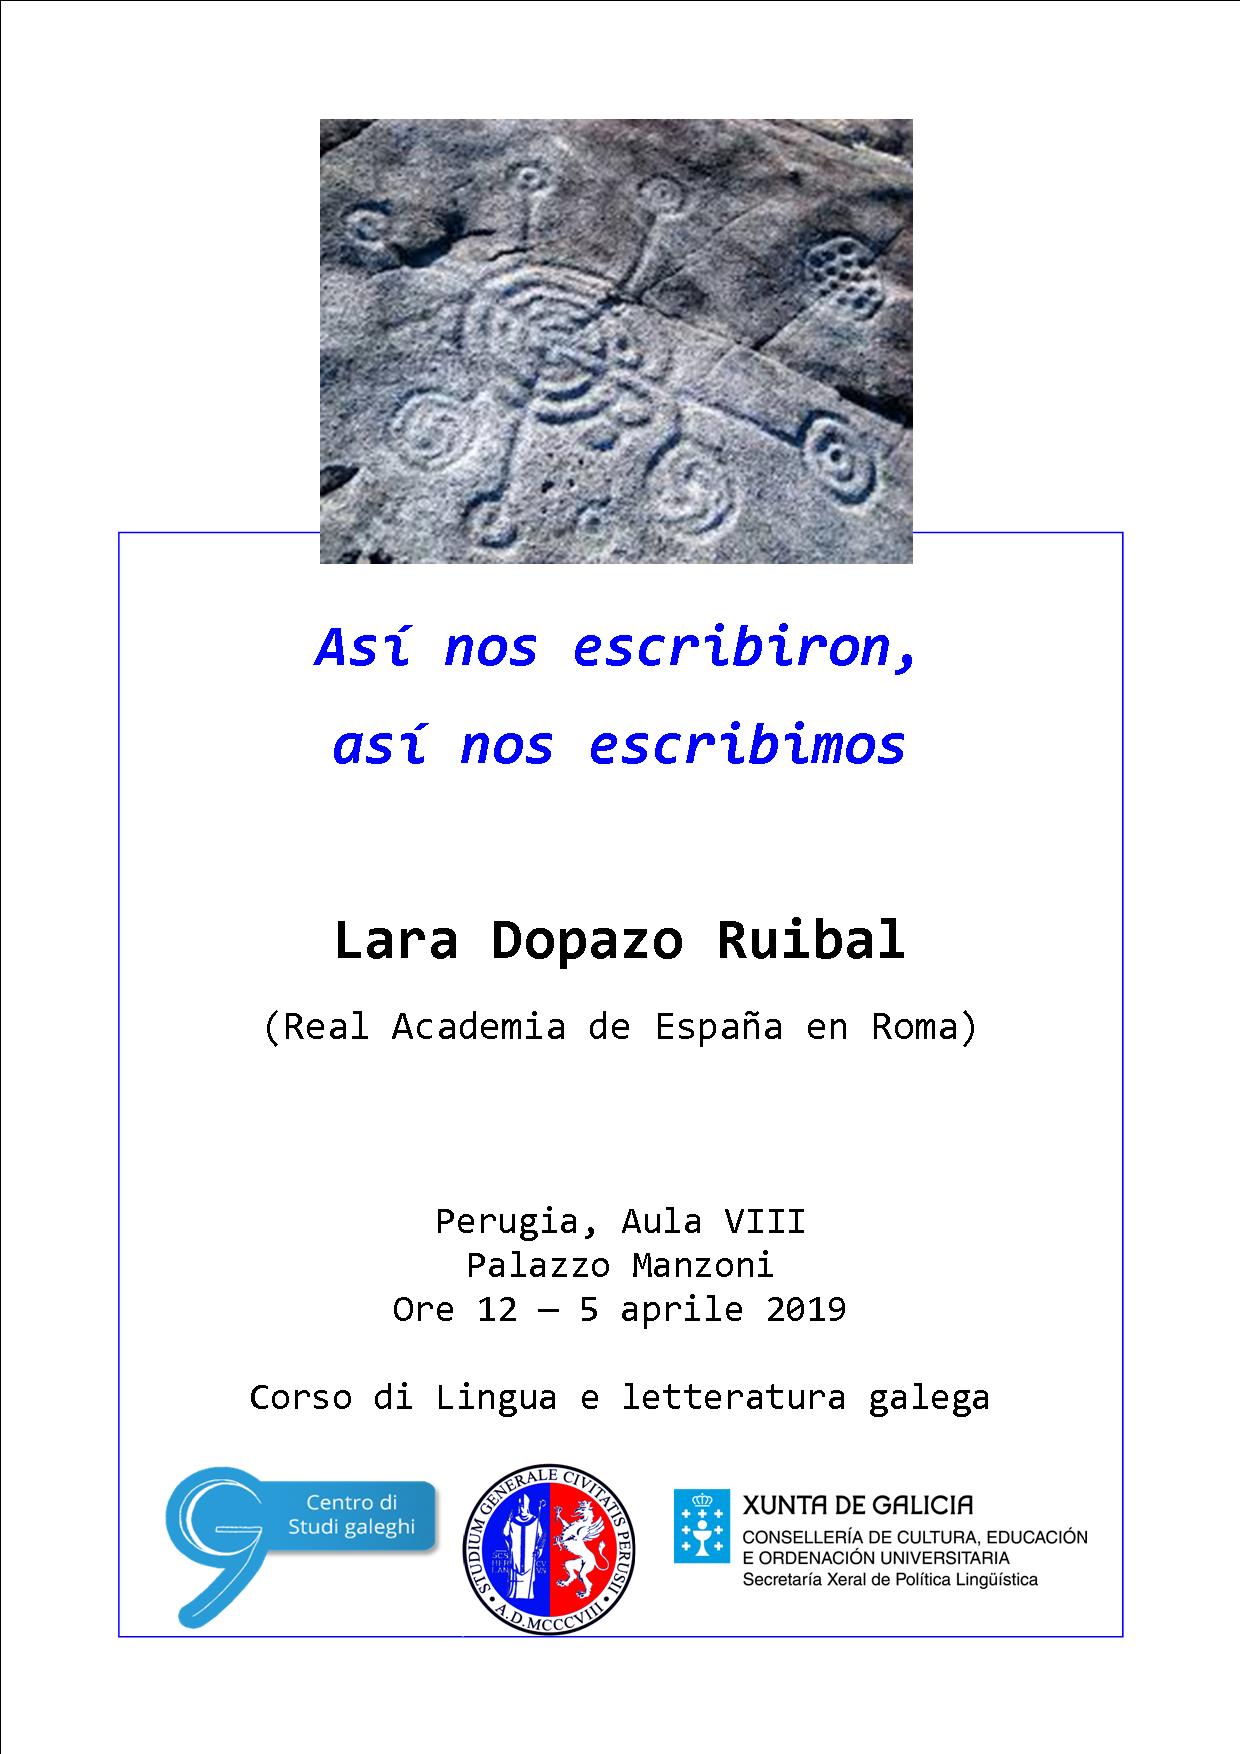 Conferenza di Lara Dopazo Ruibal